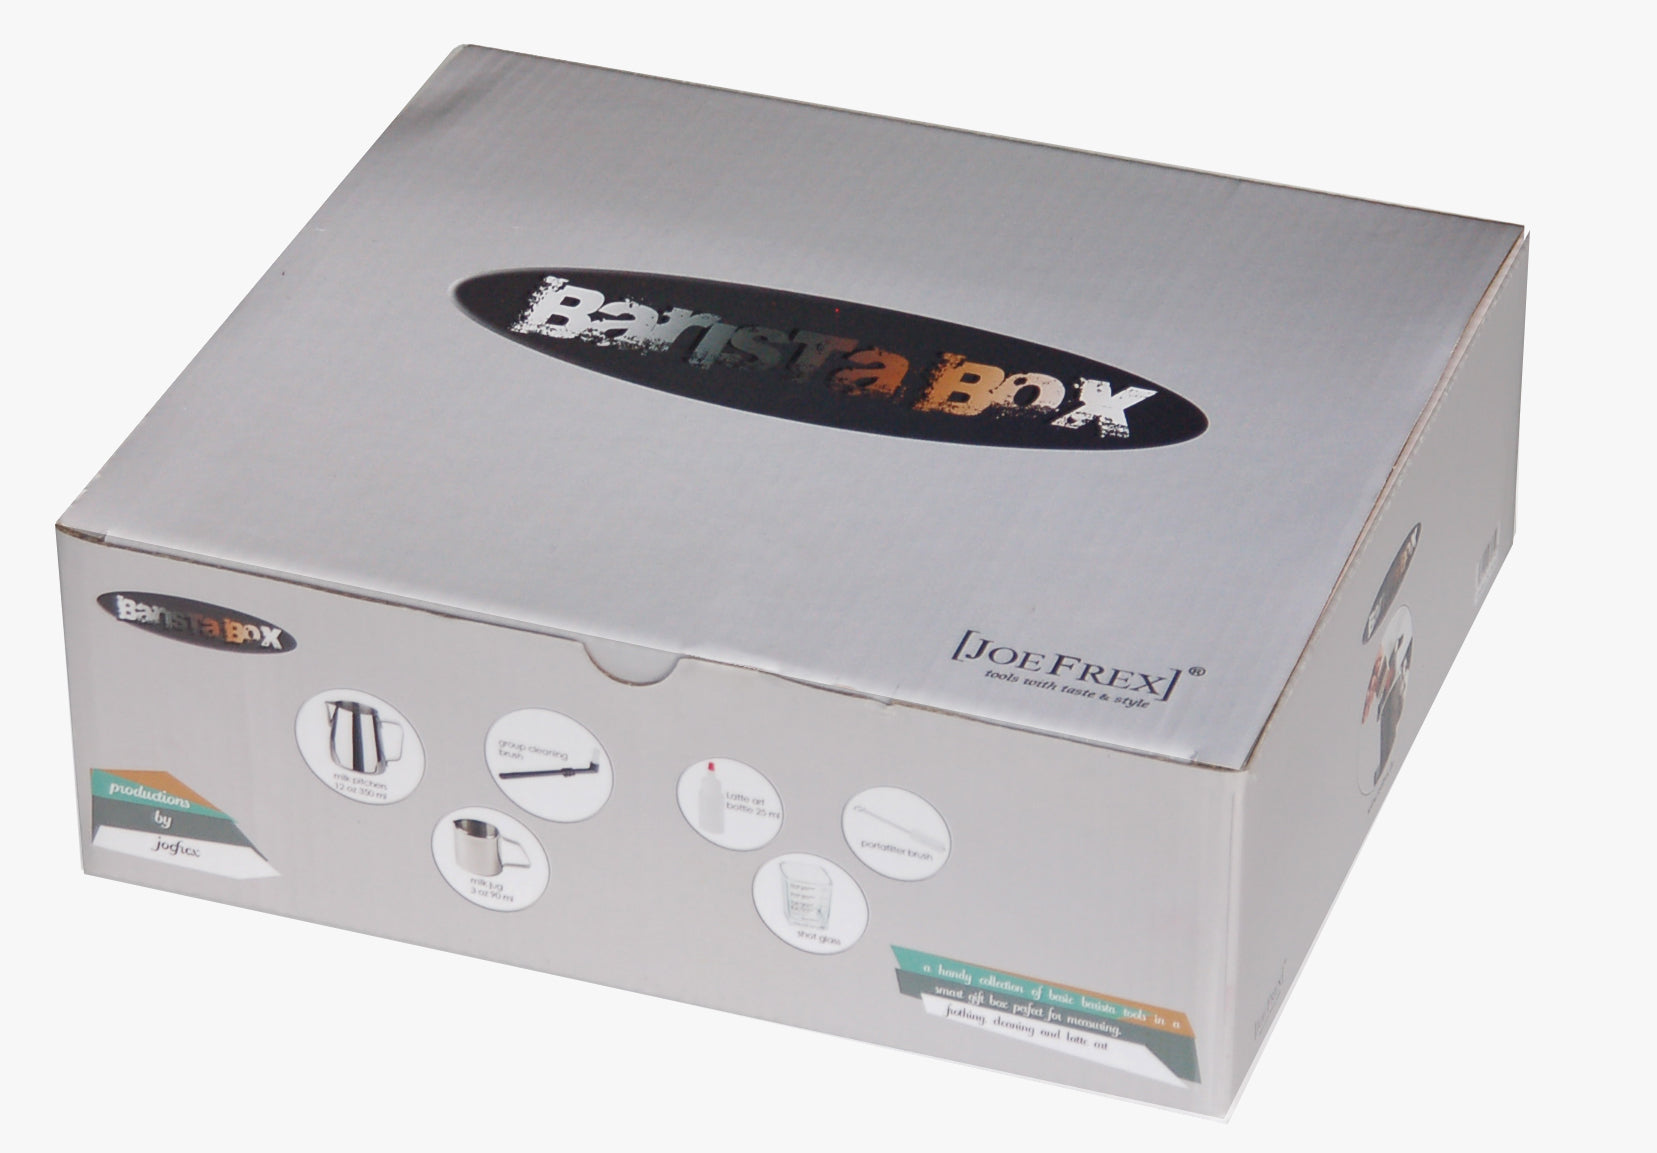 Barista Box - komplett bestückt commercial JoeFrex 